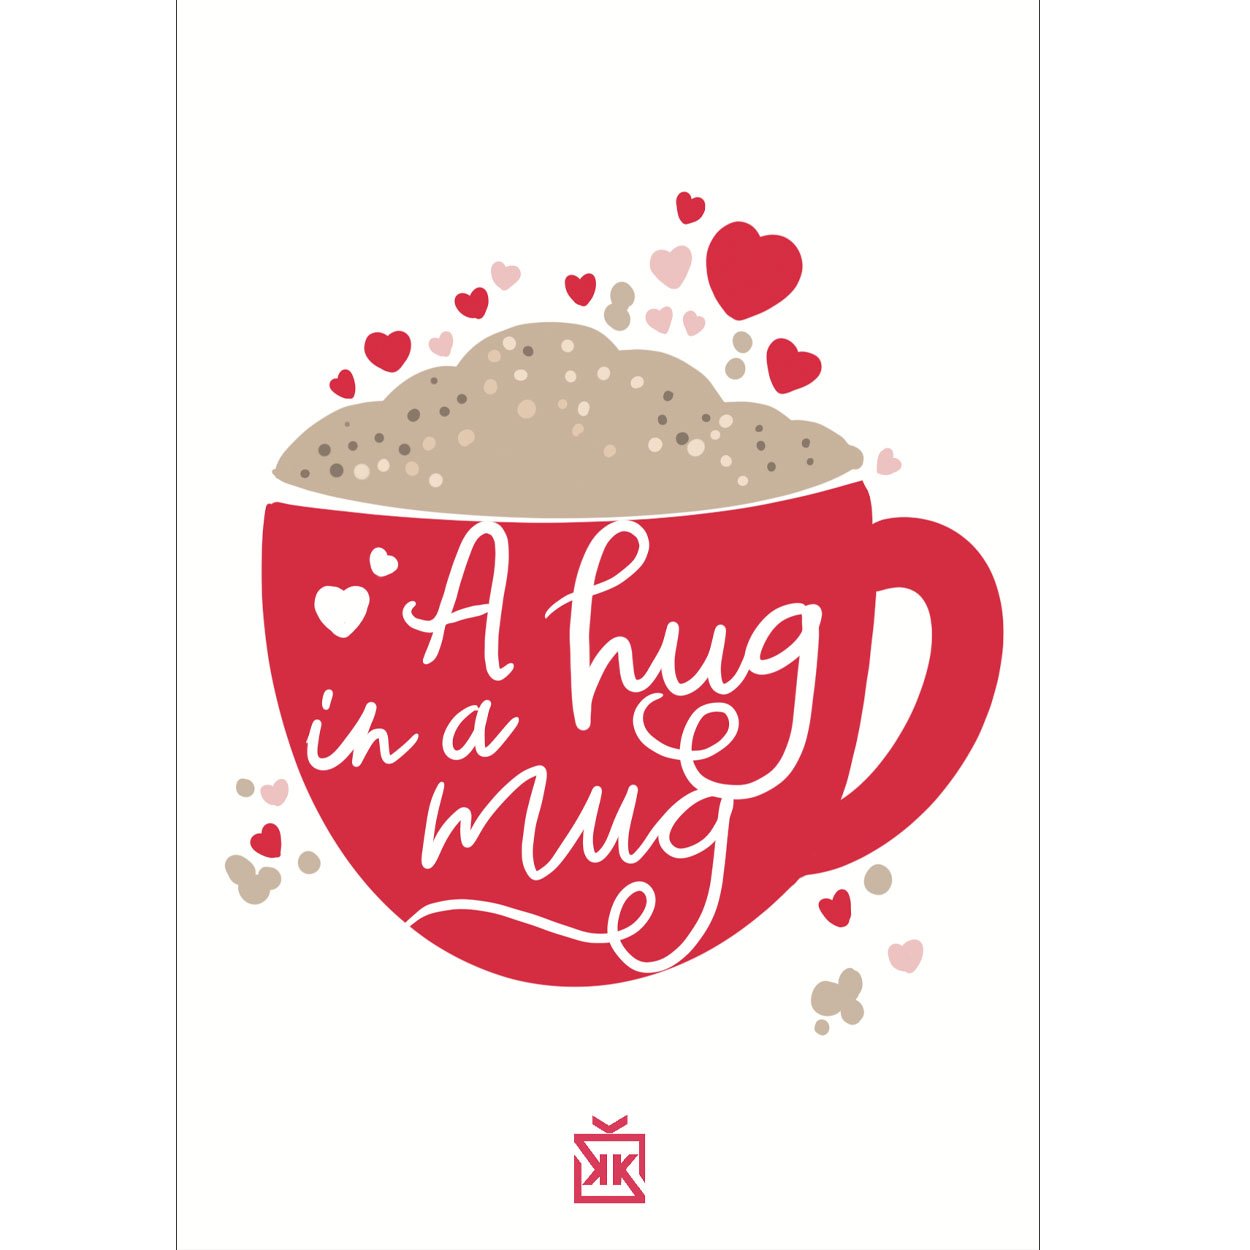 466586-a-hug-in-a-mug-motto-karti